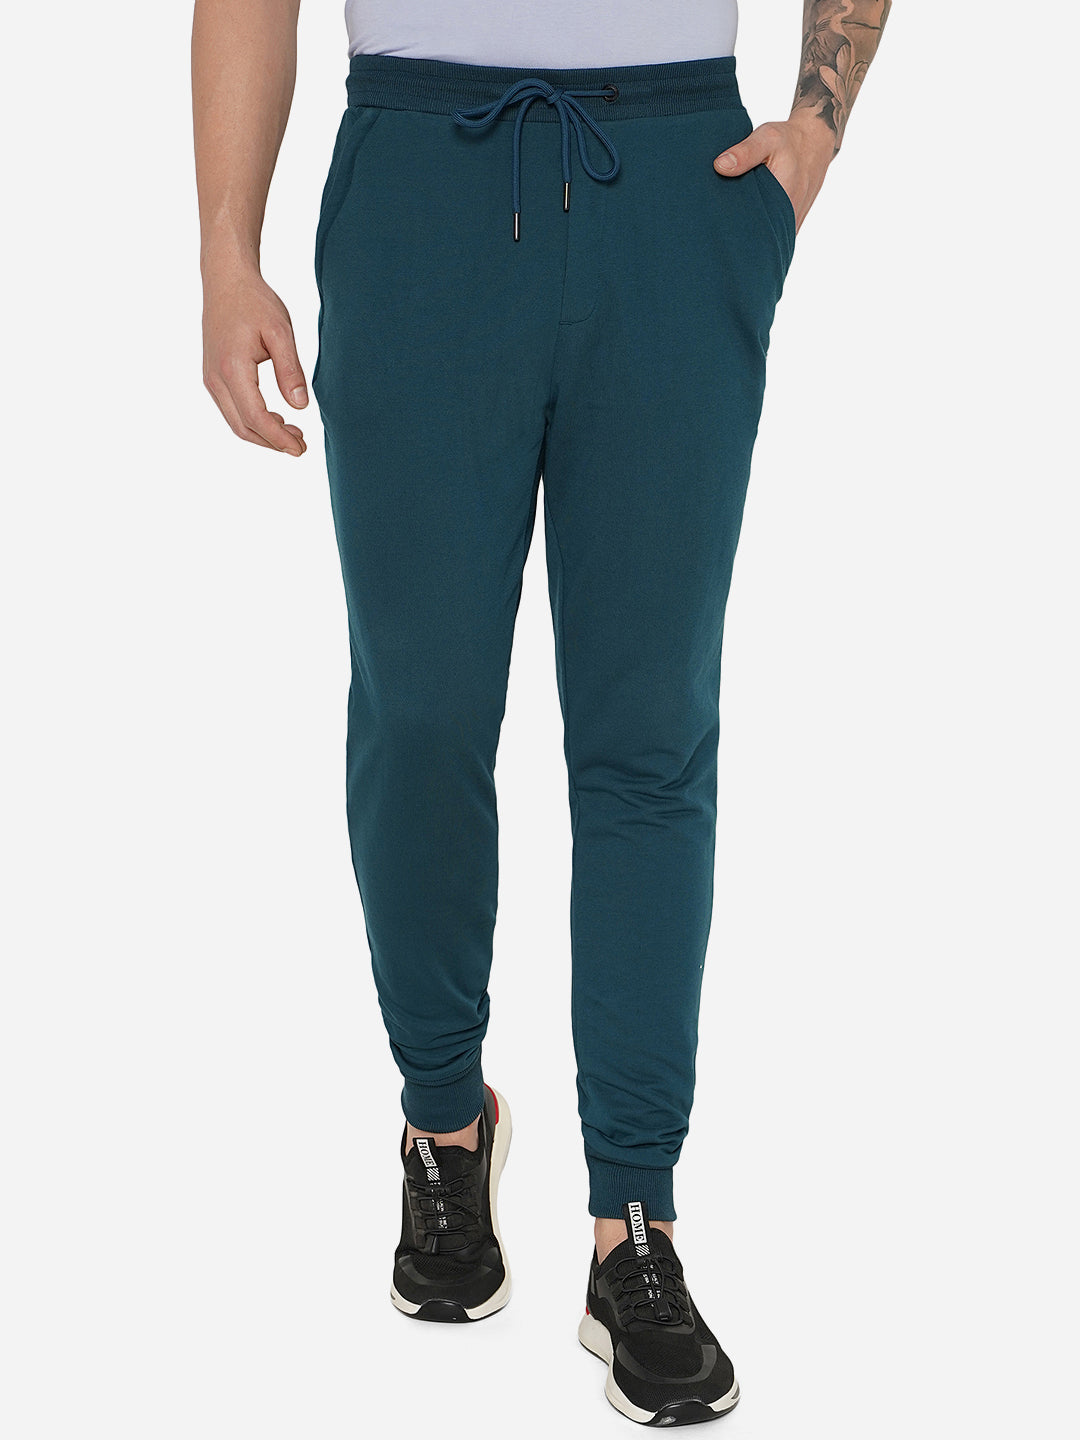 Blue Track Pant for Men - Solid & Lycra Slim Fit | JadeBlue